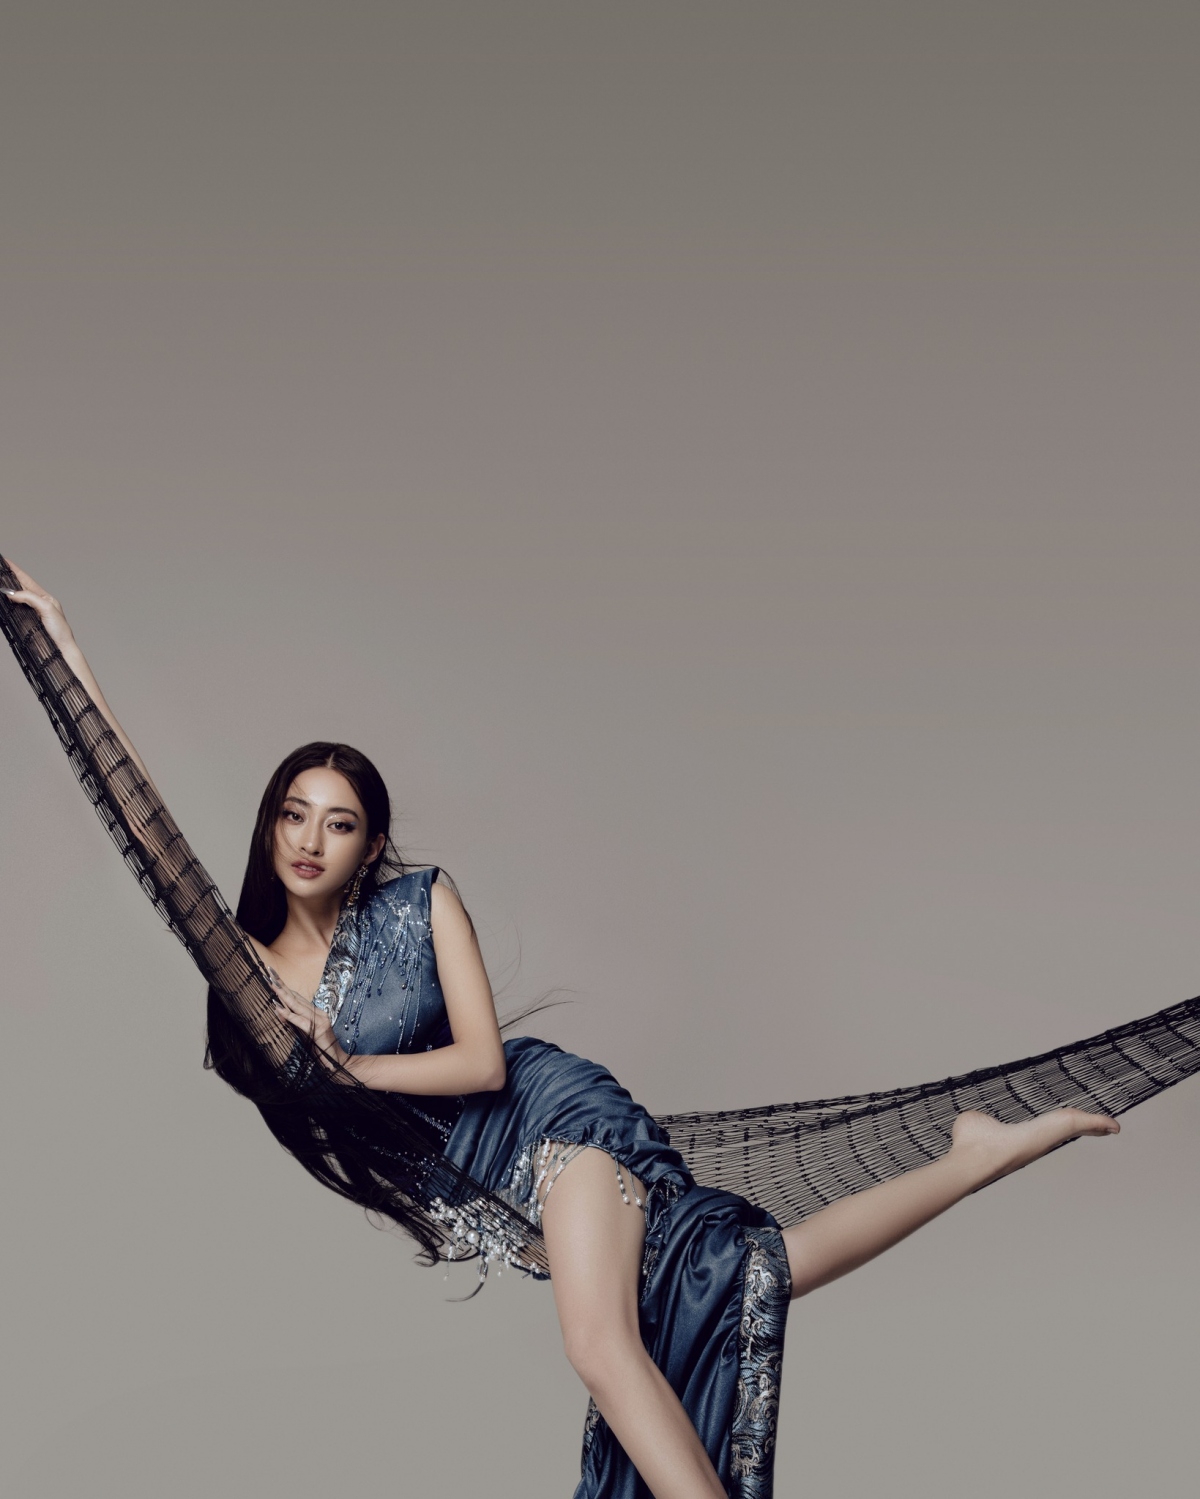 Hoa hậu Lương Thùy Linh lên đồ cực ngầu, tạo dáng sang chảnh trong bộ ảnh mới - Ảnh 5.